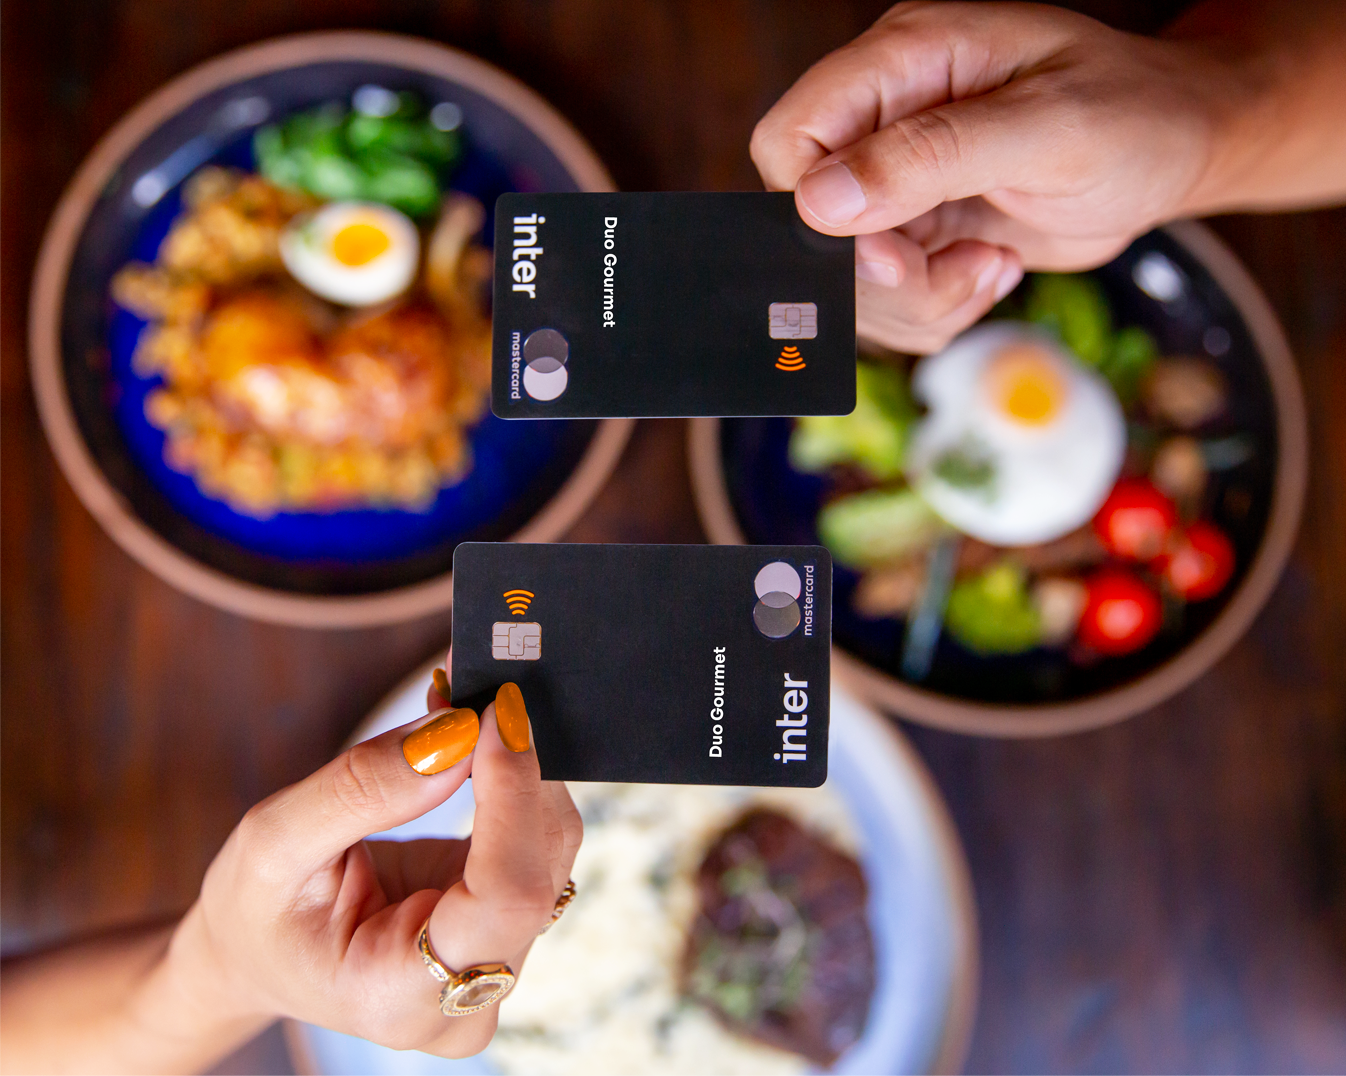 Imagens duas mãos segurando seus cartões Inter Black, com pratos de comida ao fundo, simbolizando o pagamento com Duo Gourmet